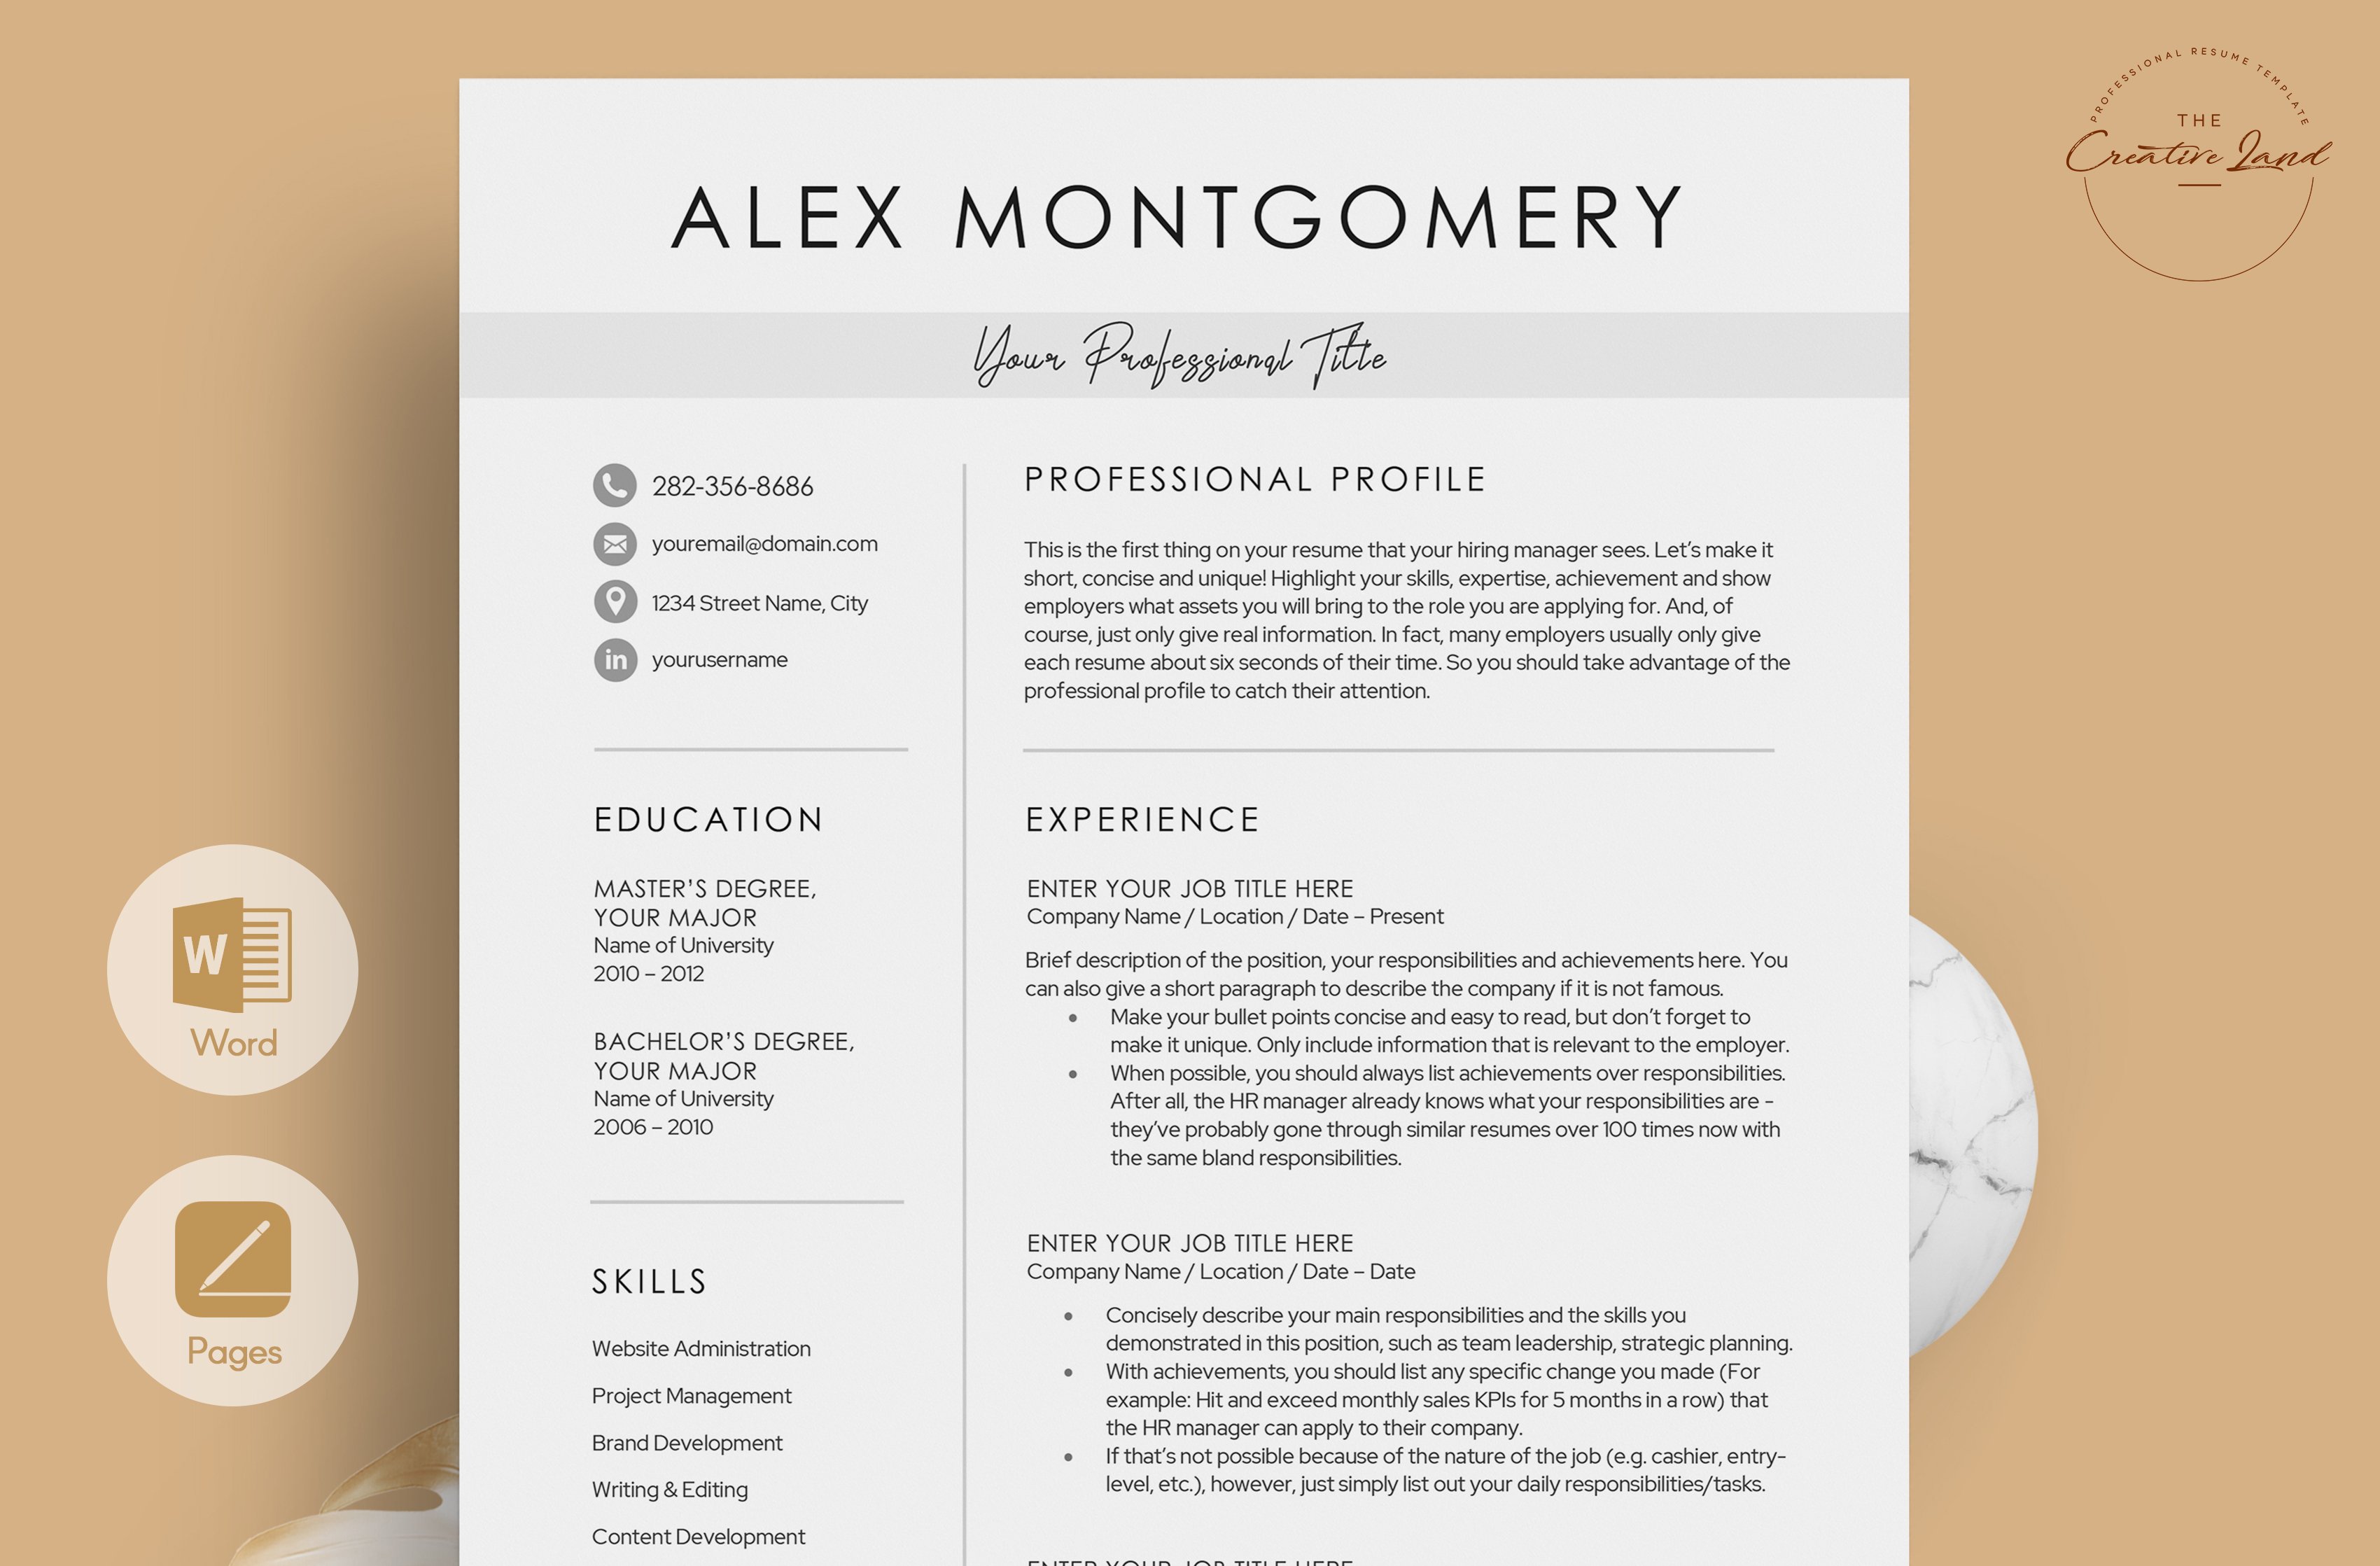 Resume/CV - The Alex cover image.